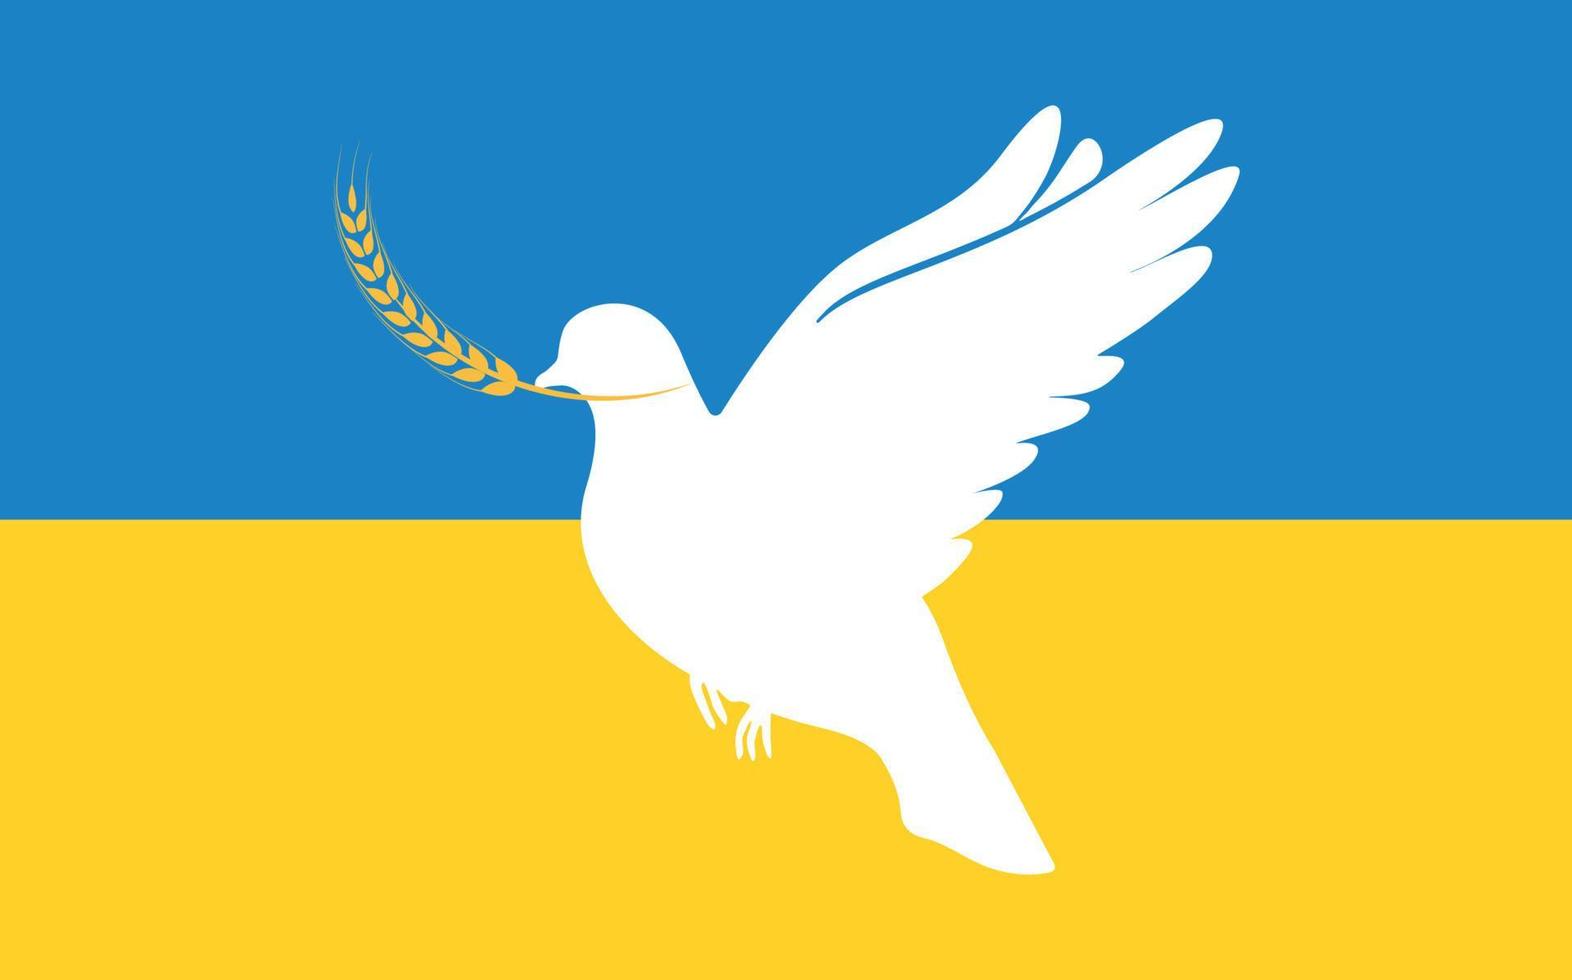 Illustration für die Welt in der Ukraine. Der Vogel ist ein Symbol des Friedens. kein Krieg. Vektor-Illustration vektor